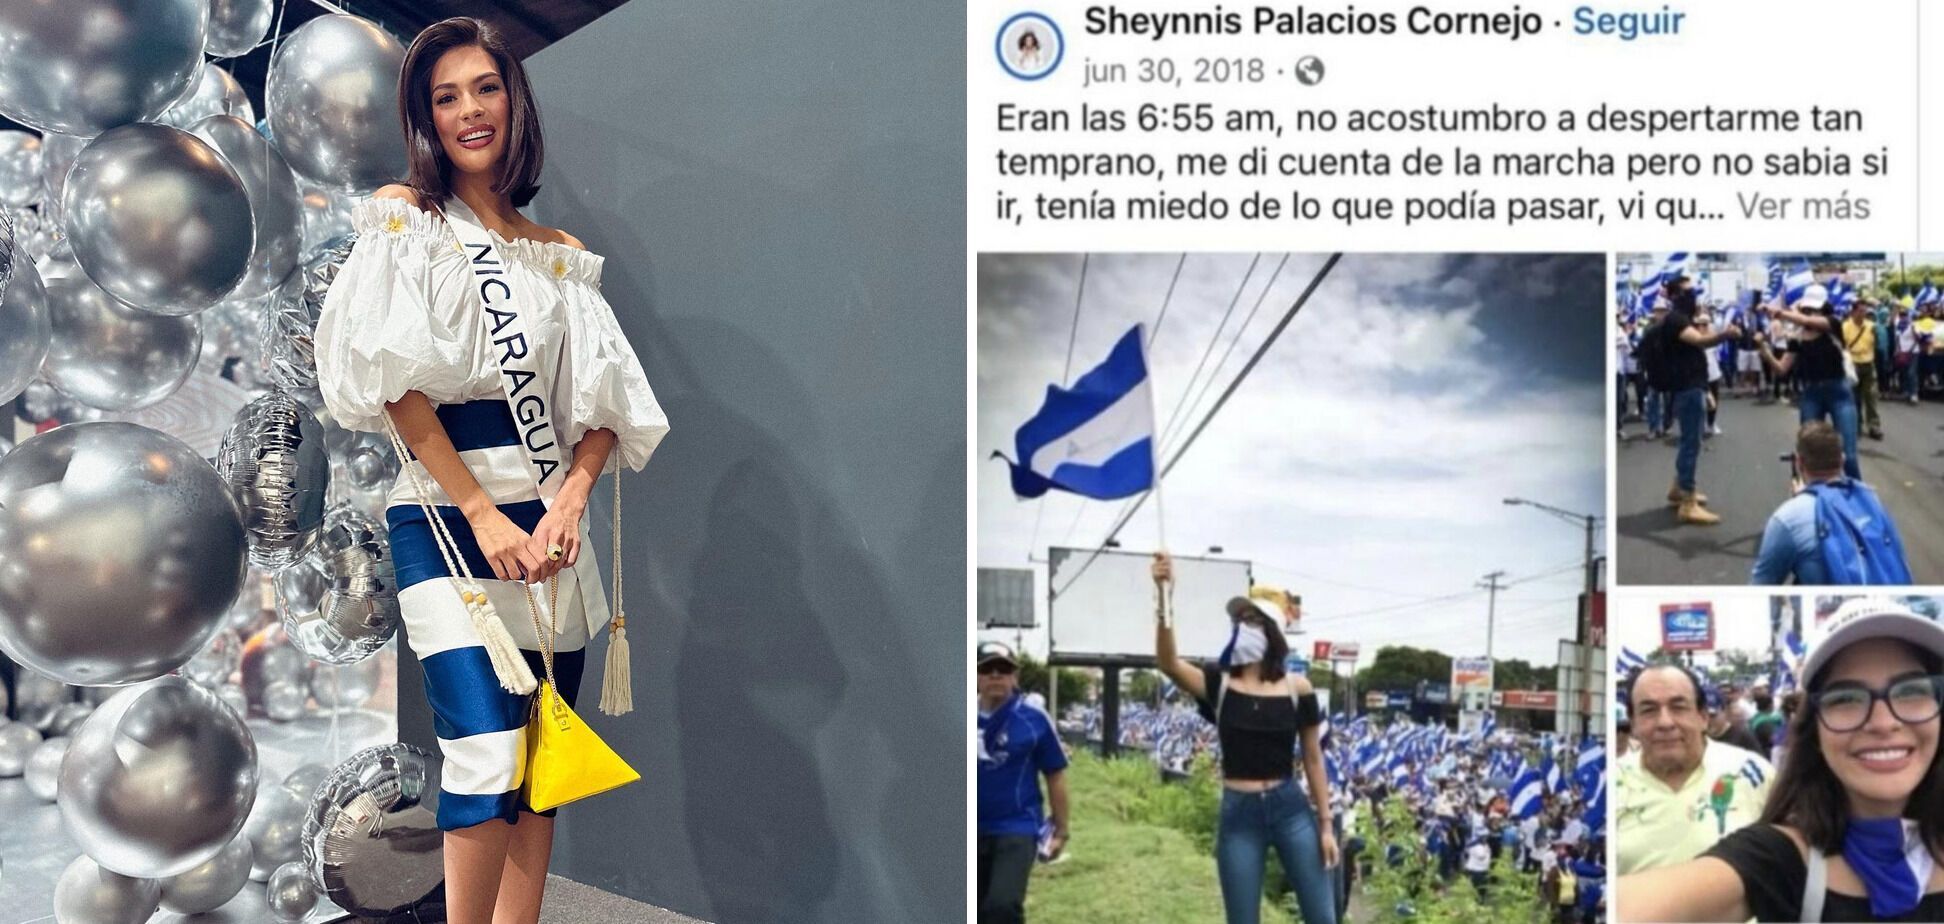 Нова "Міс Всесвіт" з Нікарагуа потрапила в гучний скандал після перемоги через своє минуле